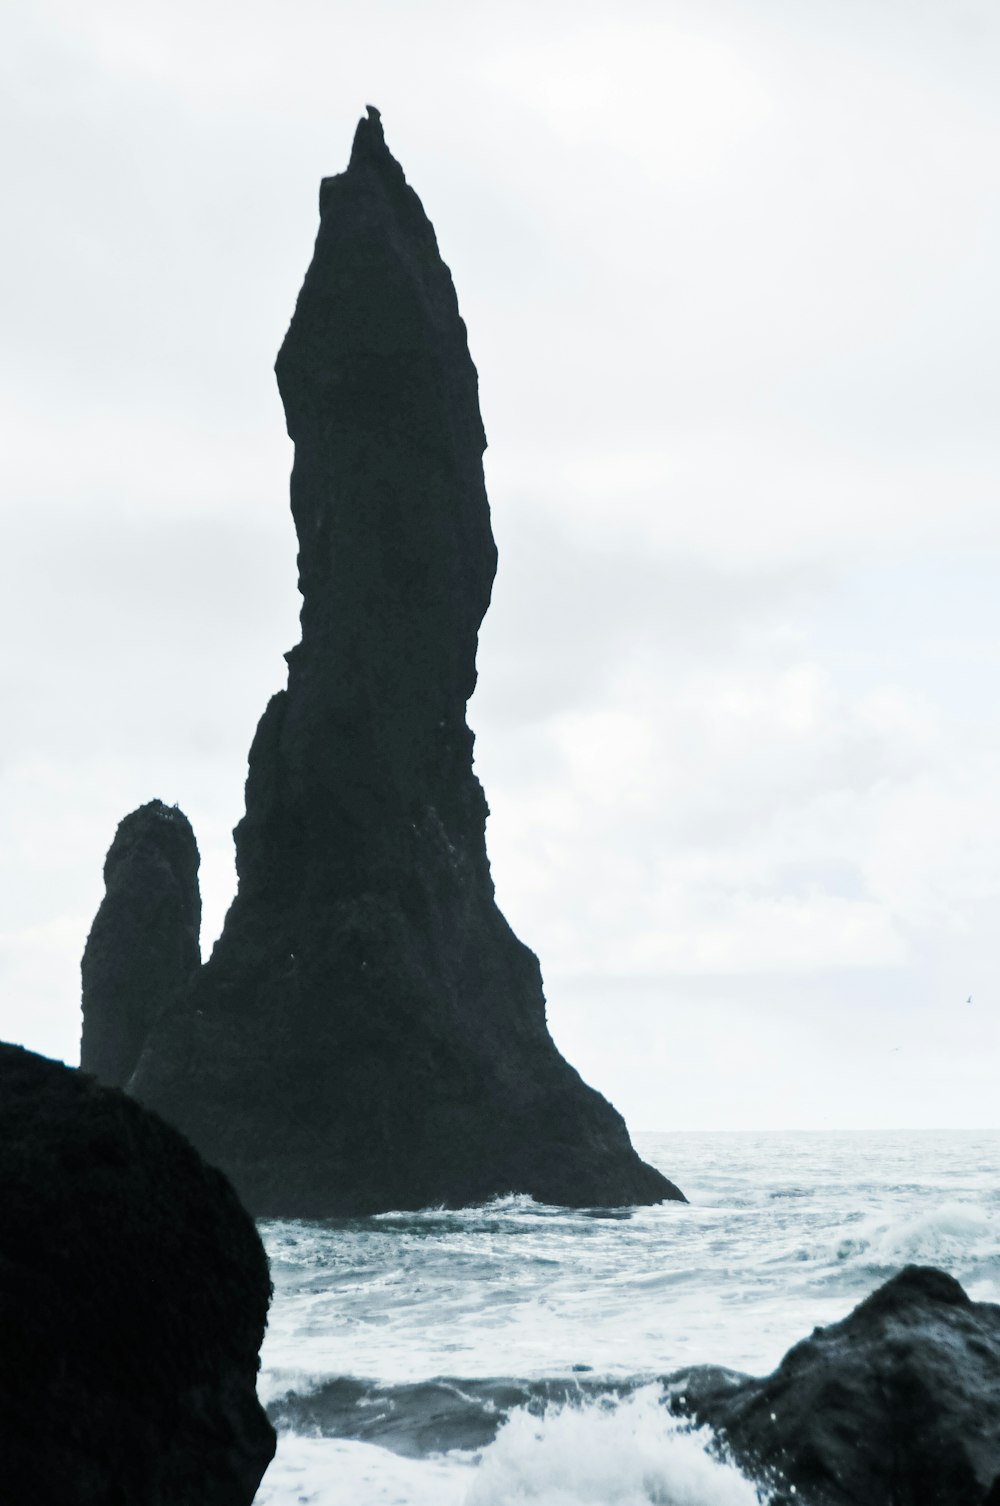 Una persona parada frente a una gran roca